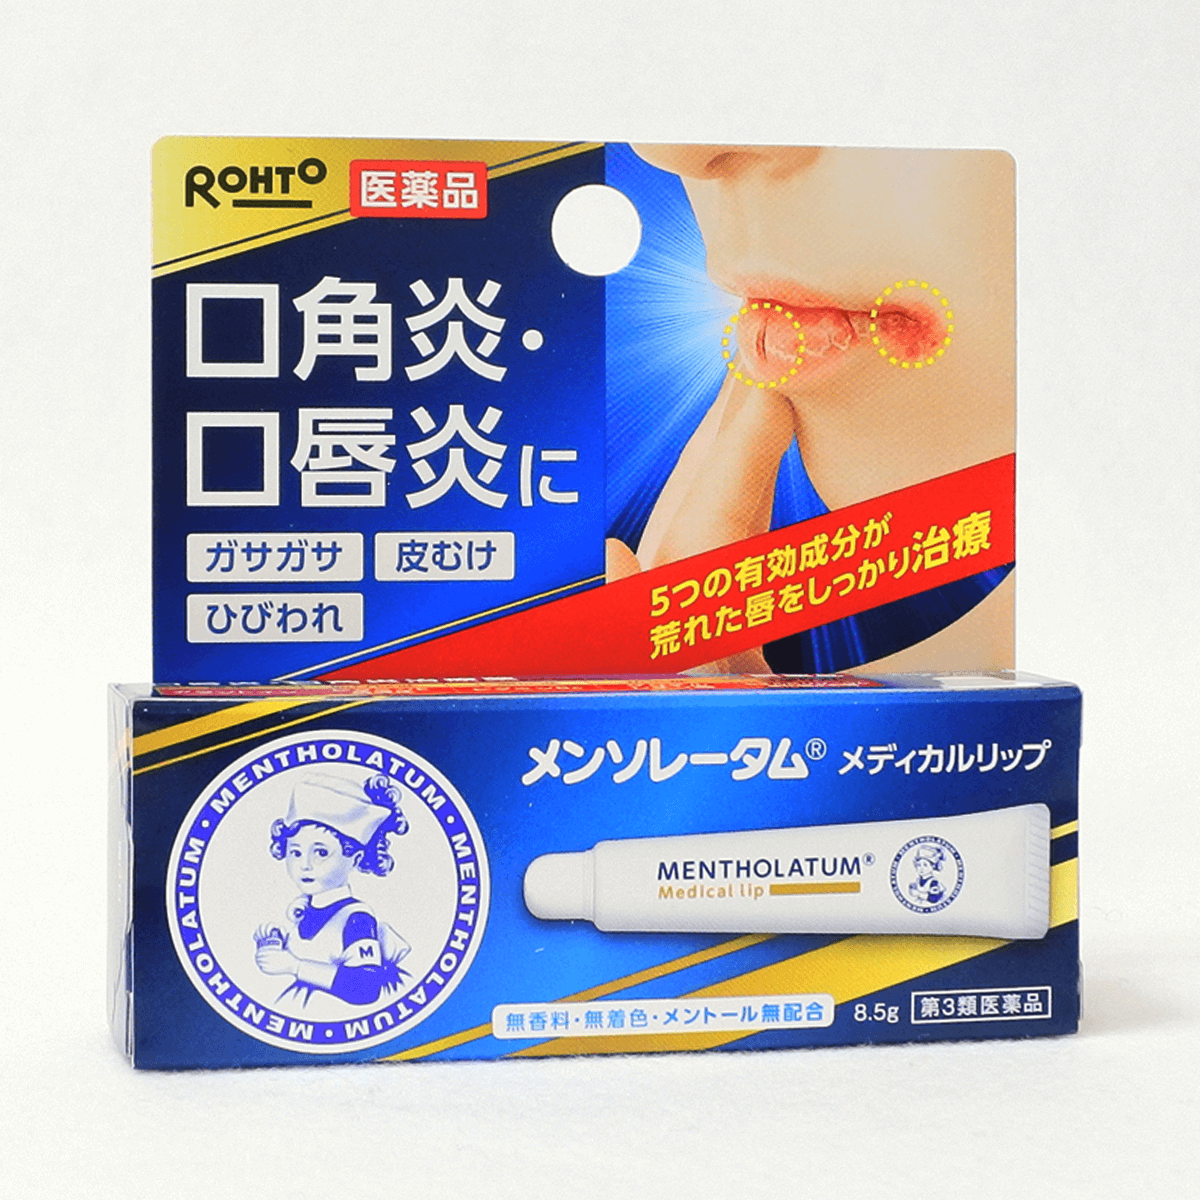 【第3类医药品】乐敦 曼秀雷敦 药用唇膏 8.5g